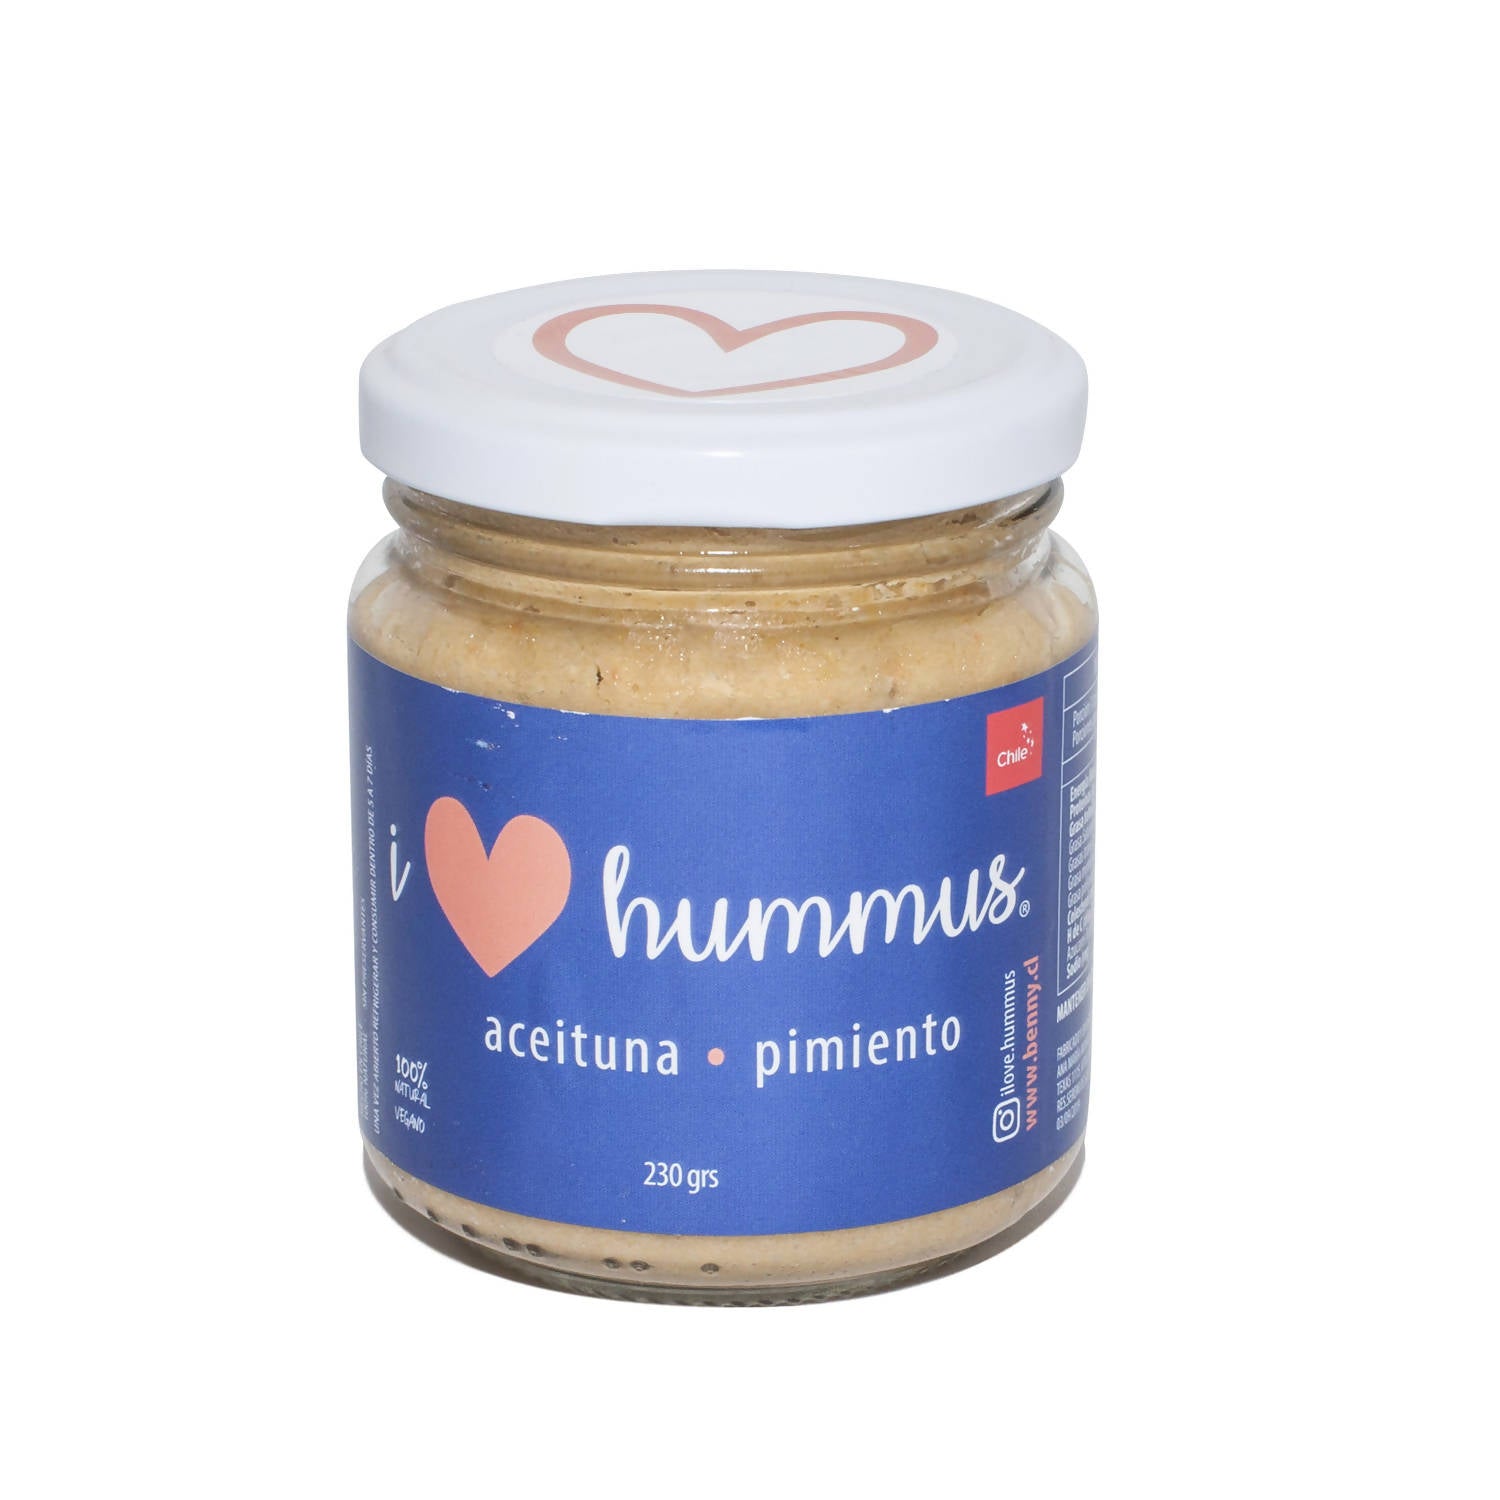 Pack Hummus Aceituna - Pimiento, Original y Ajo Chilote - Merkén